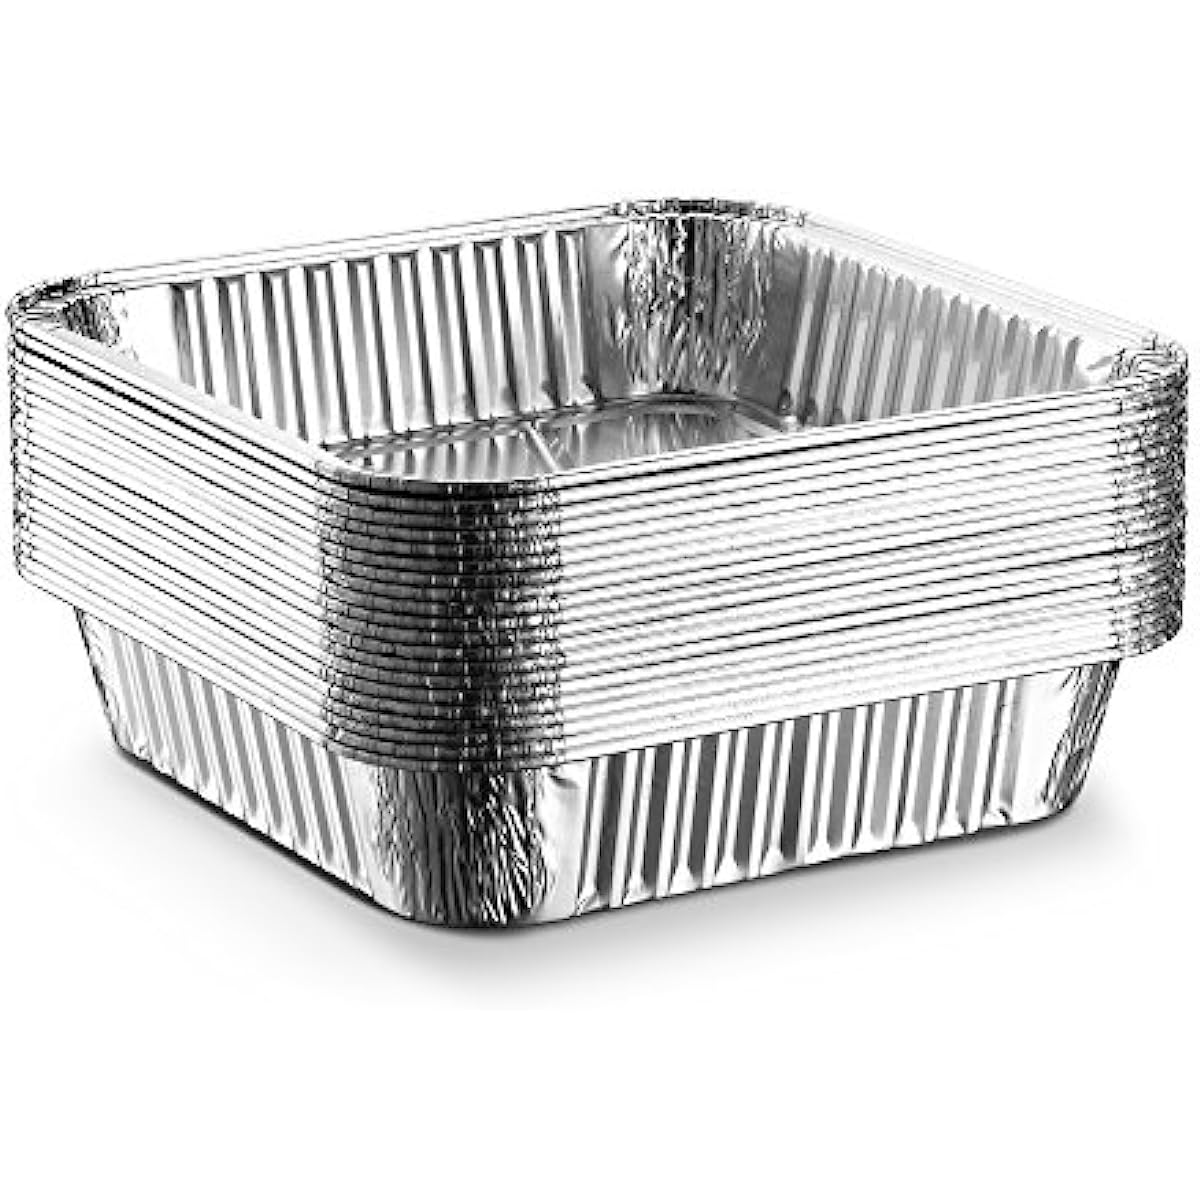 8x8 Foil Pans with Lids (20 Count) 8 Inch Square Aluminum Pans